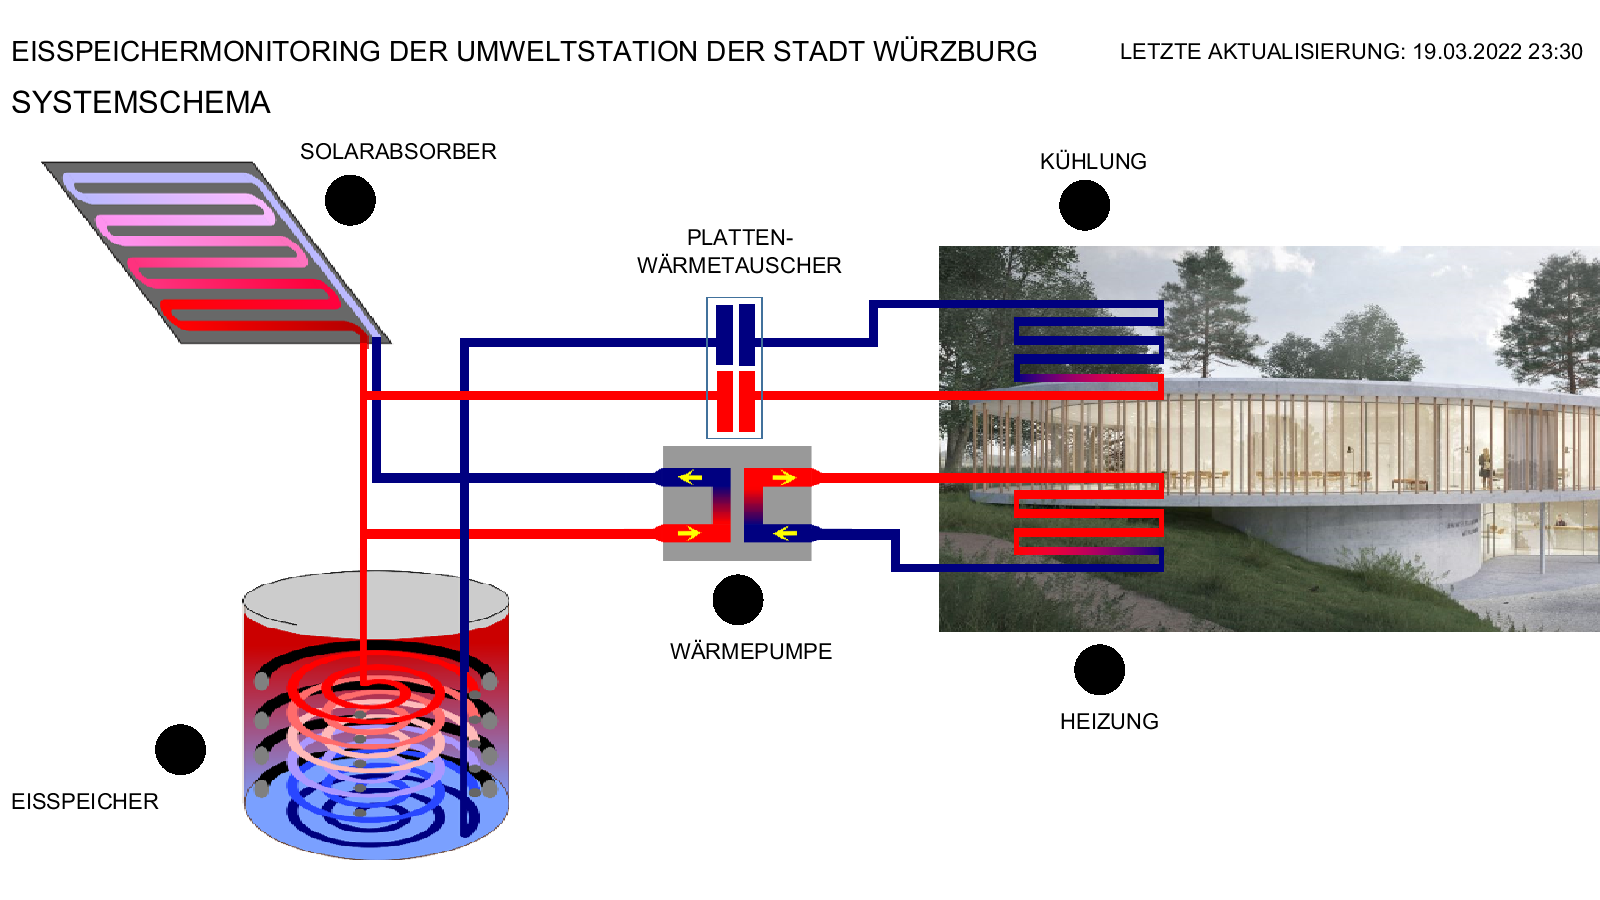 Umweltstation der Stadt Würzburg, Eisspeicher: Systemschema 